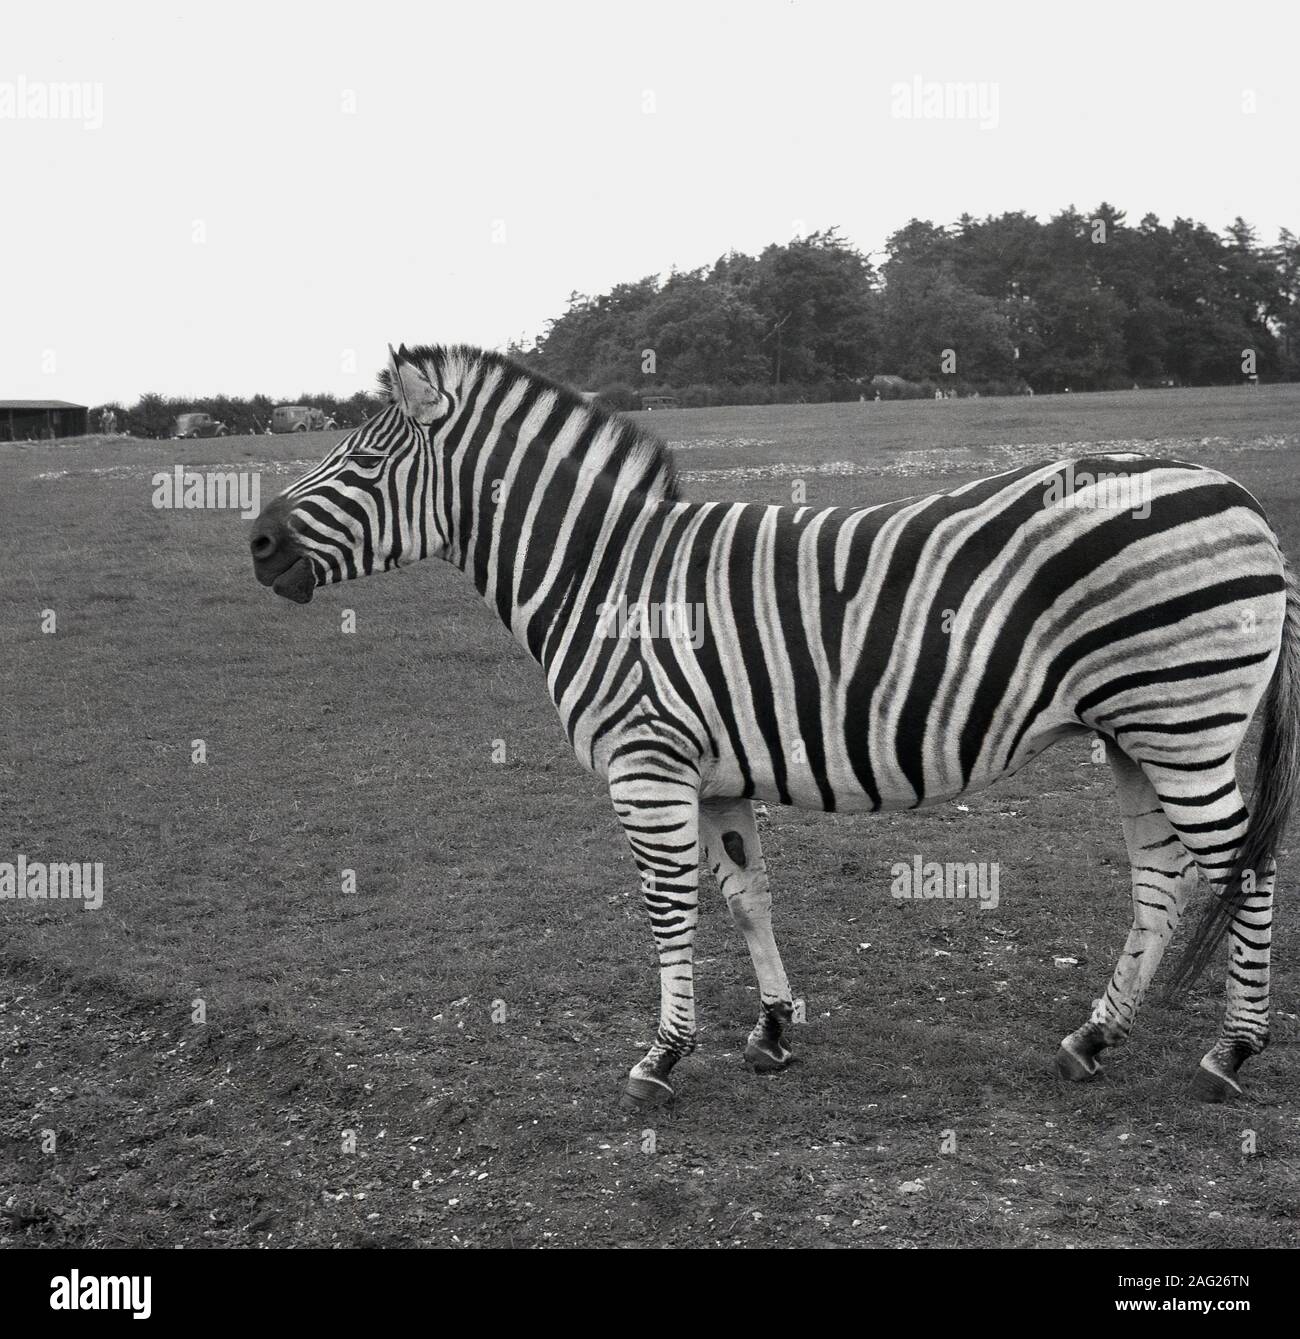 1950er Jahre, historische Seitenansicht eines Zebras in seinem Gehege, einem großen Feld, in einem Wildpark in England, Großbritannien. Ein afrikanisches Pferd mit einem markanten schwarz-weiß gestreiften Fell gibt es drei lebende Arten des Wildtieres. Stockfoto